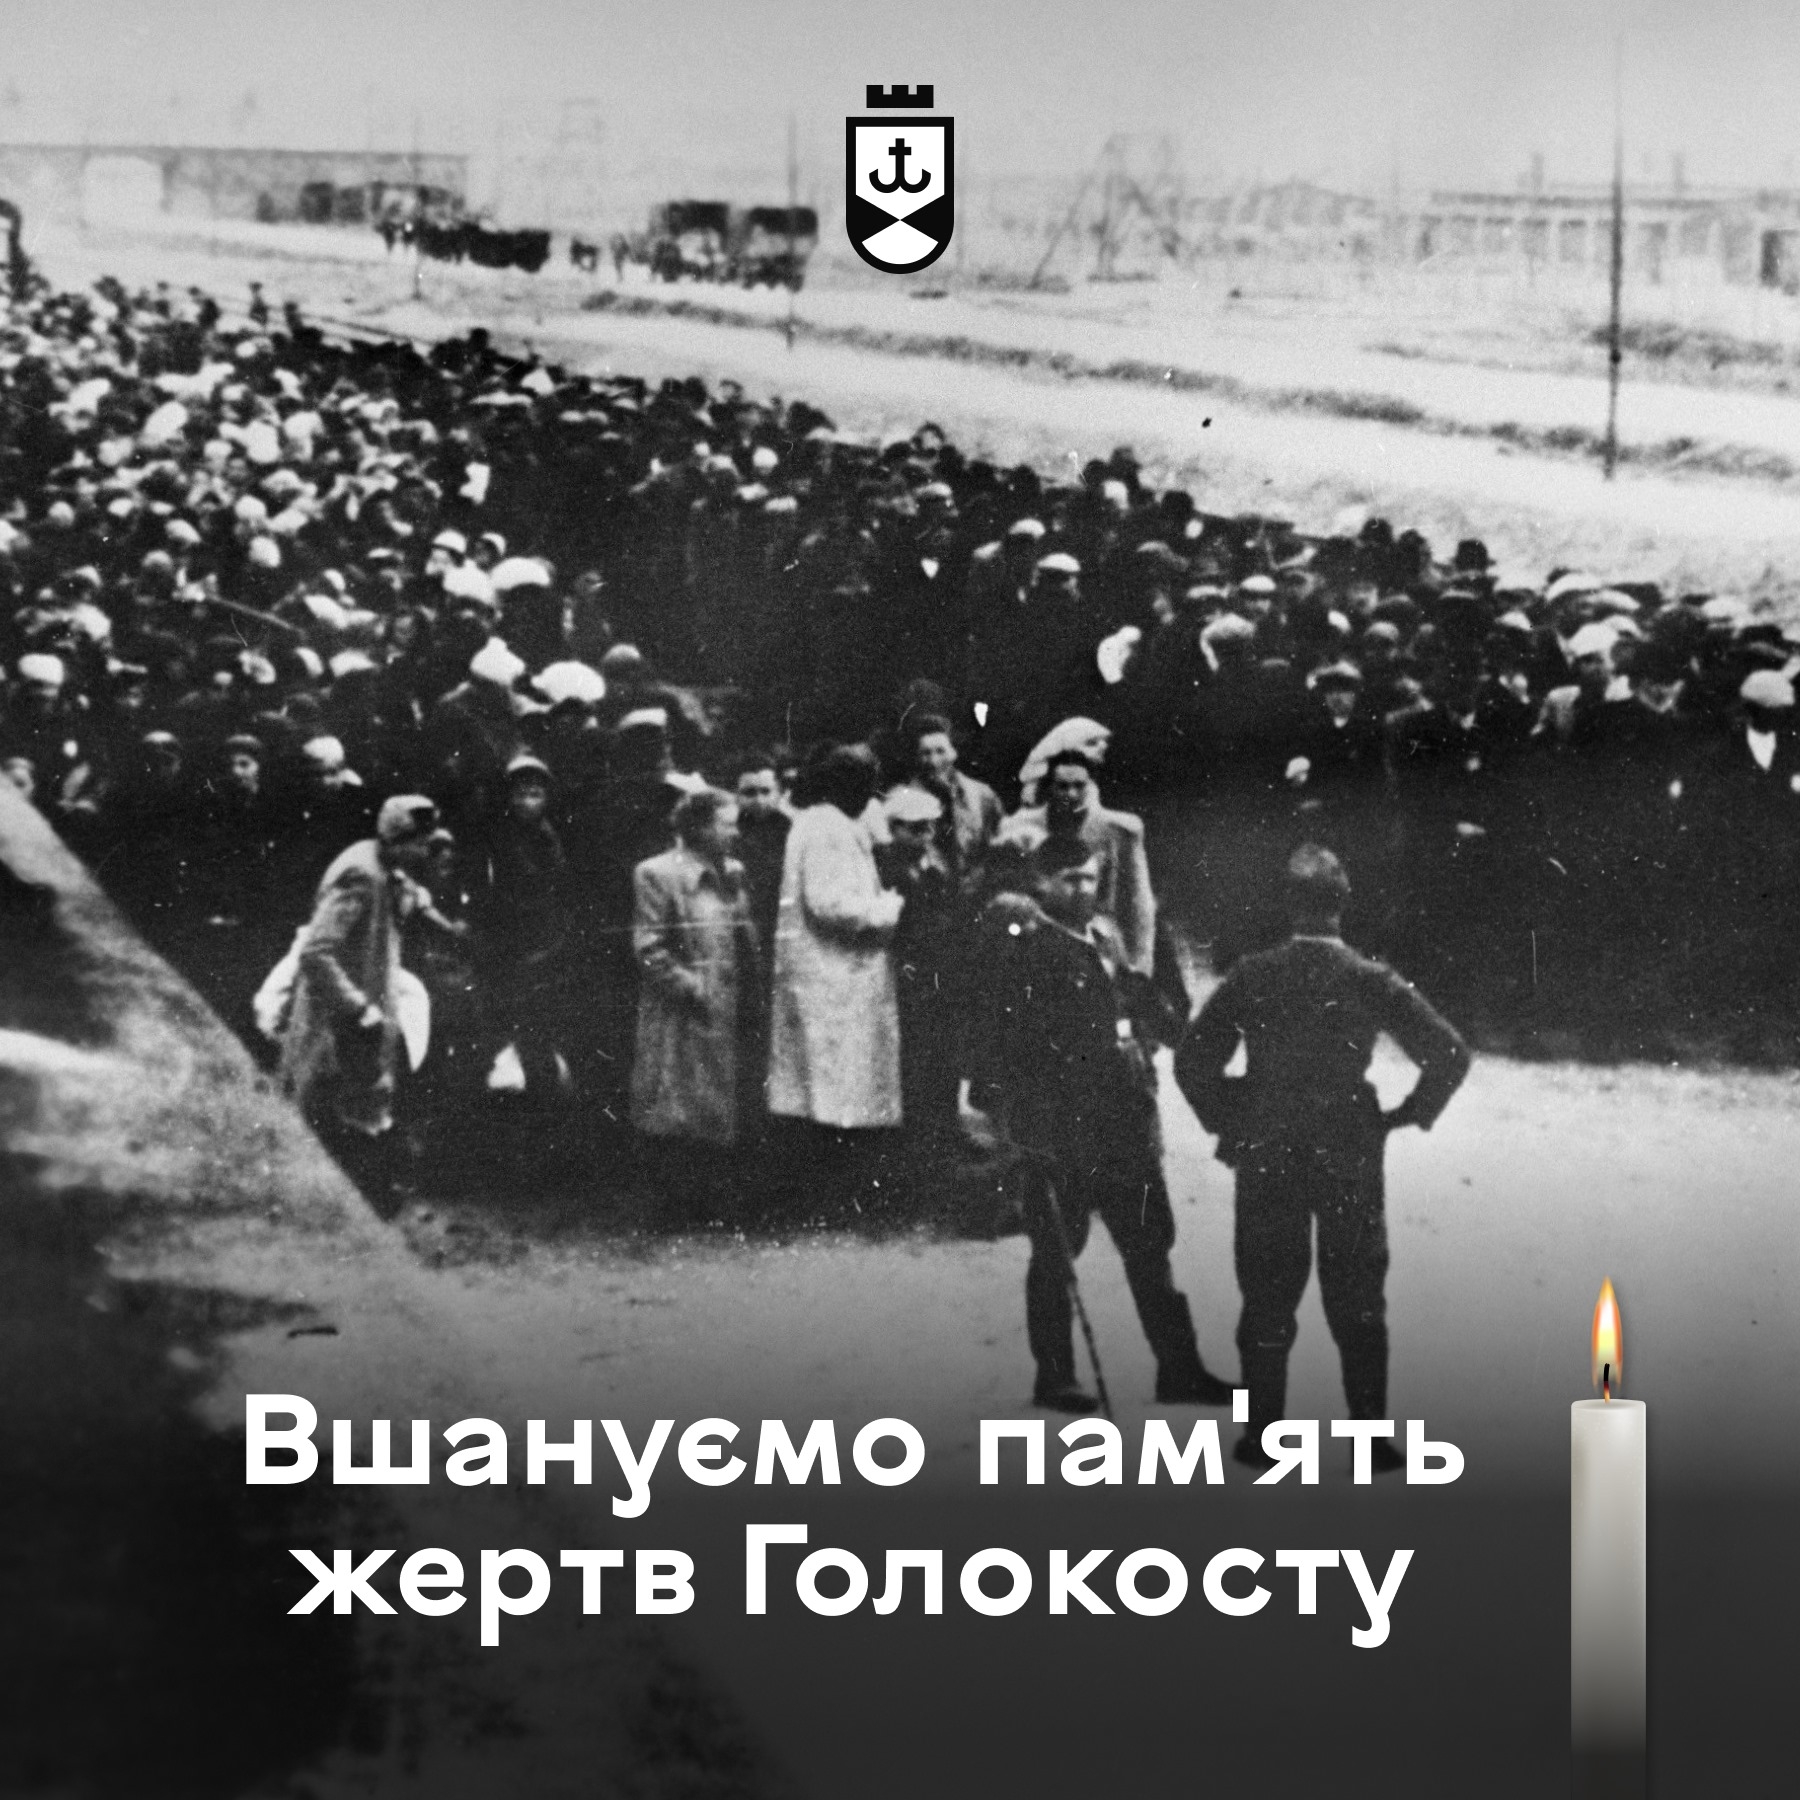 Голокост - трагедія з минулого, яка ніколи не повинна повторитися